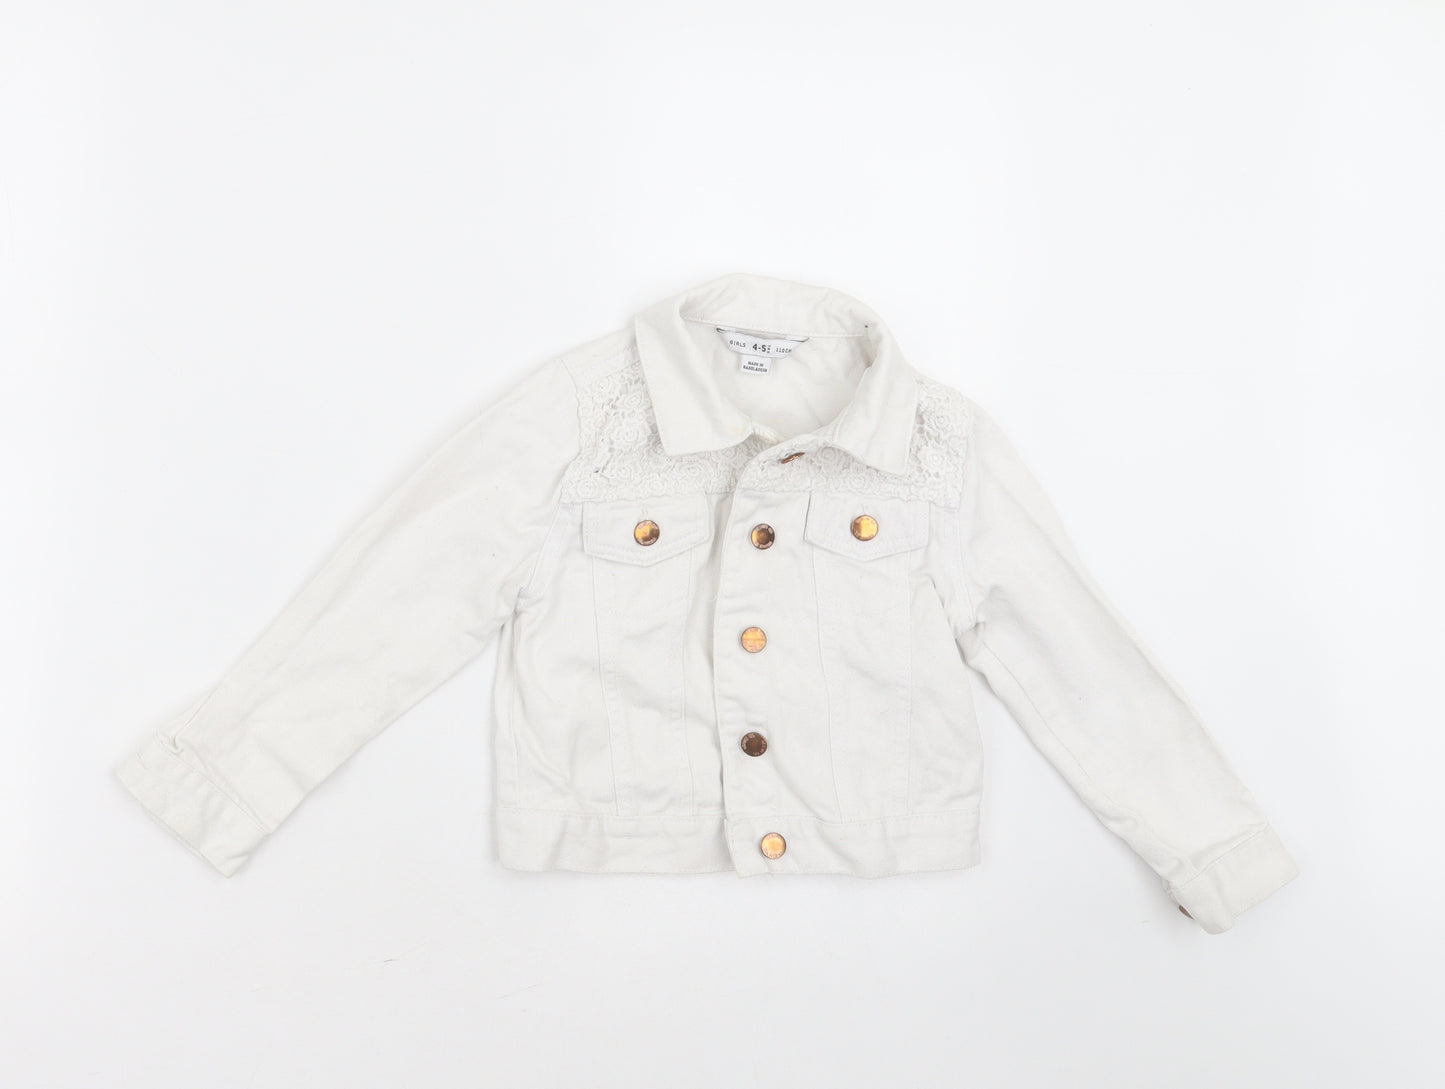 Primark Girls White   Jacket  Size 4-5 Years  Button